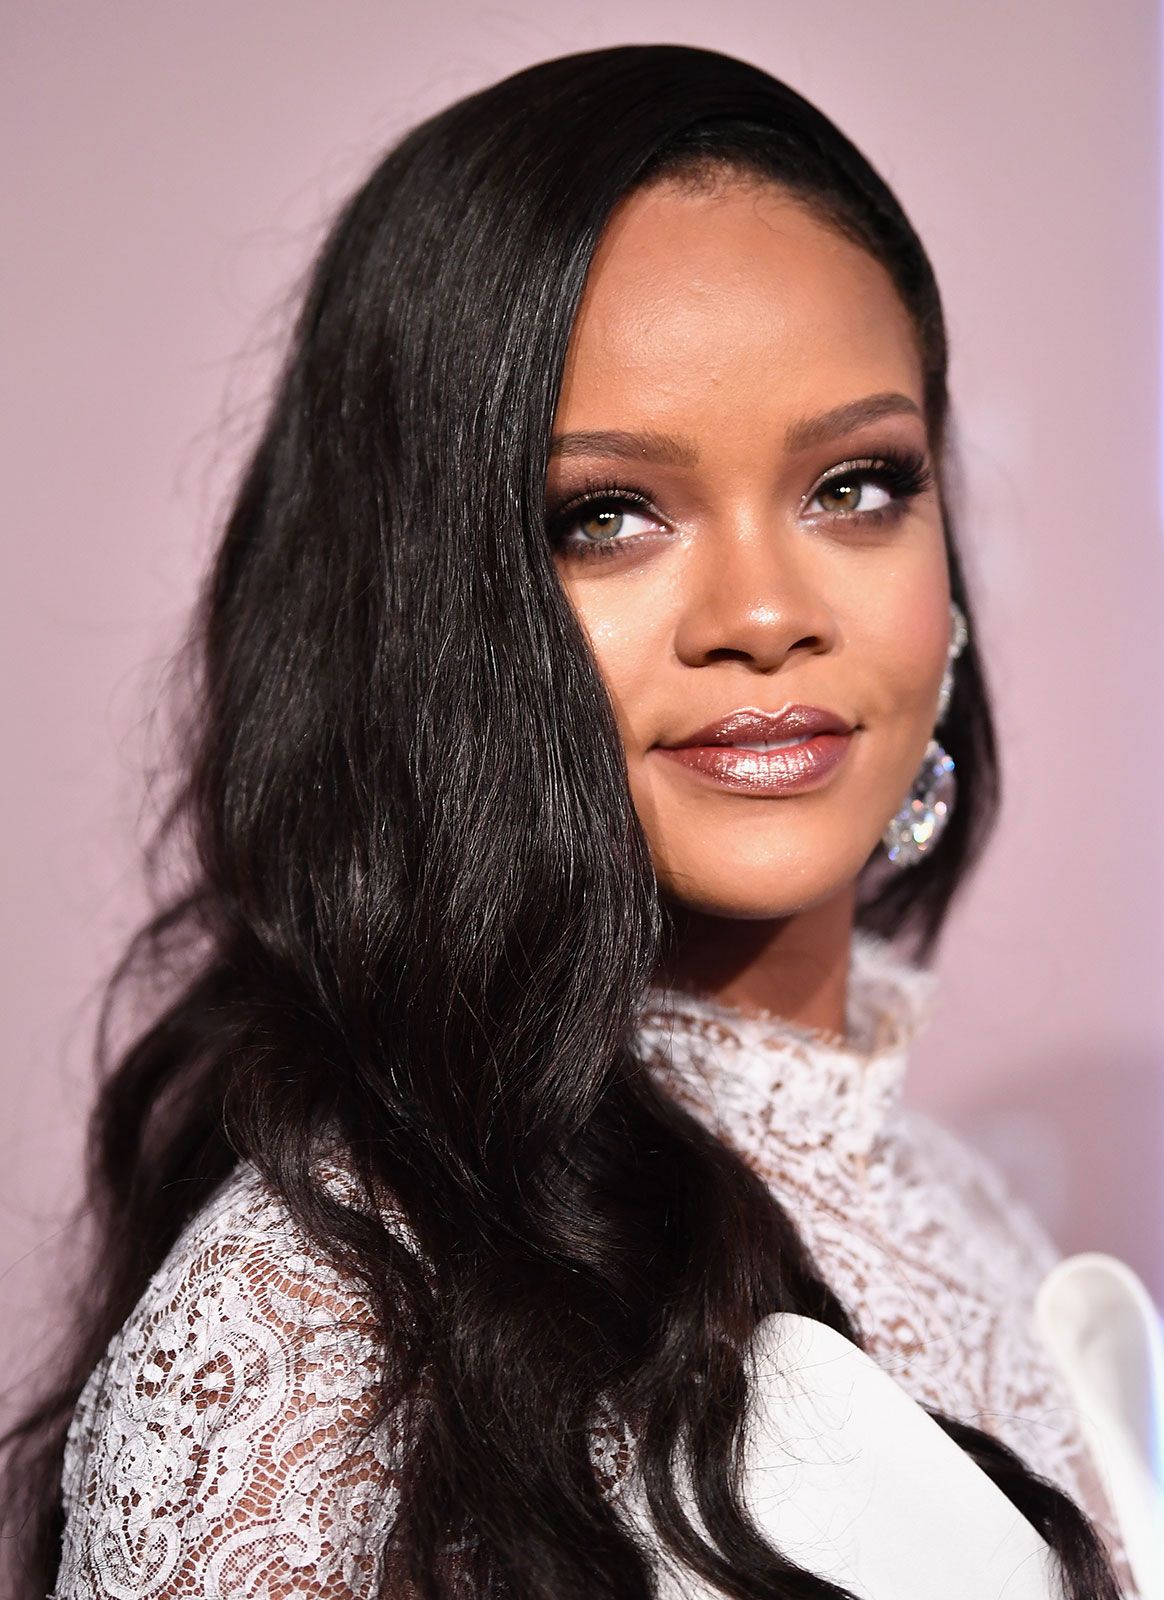  Rihanna, biografi